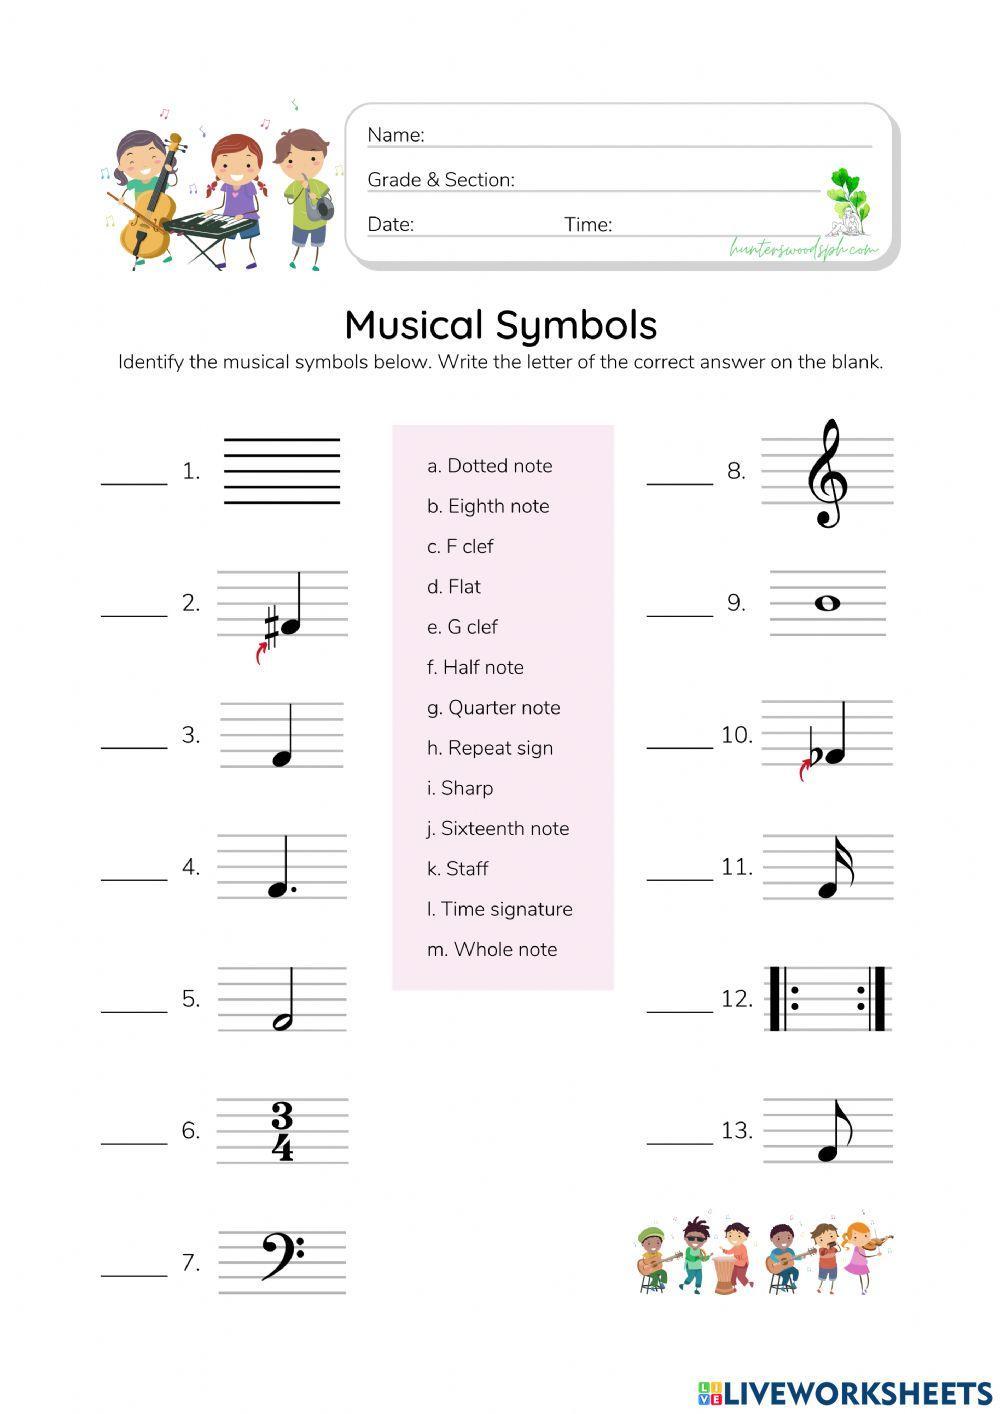 Musical Symbols - HunterWoodsPH.com Worksheet